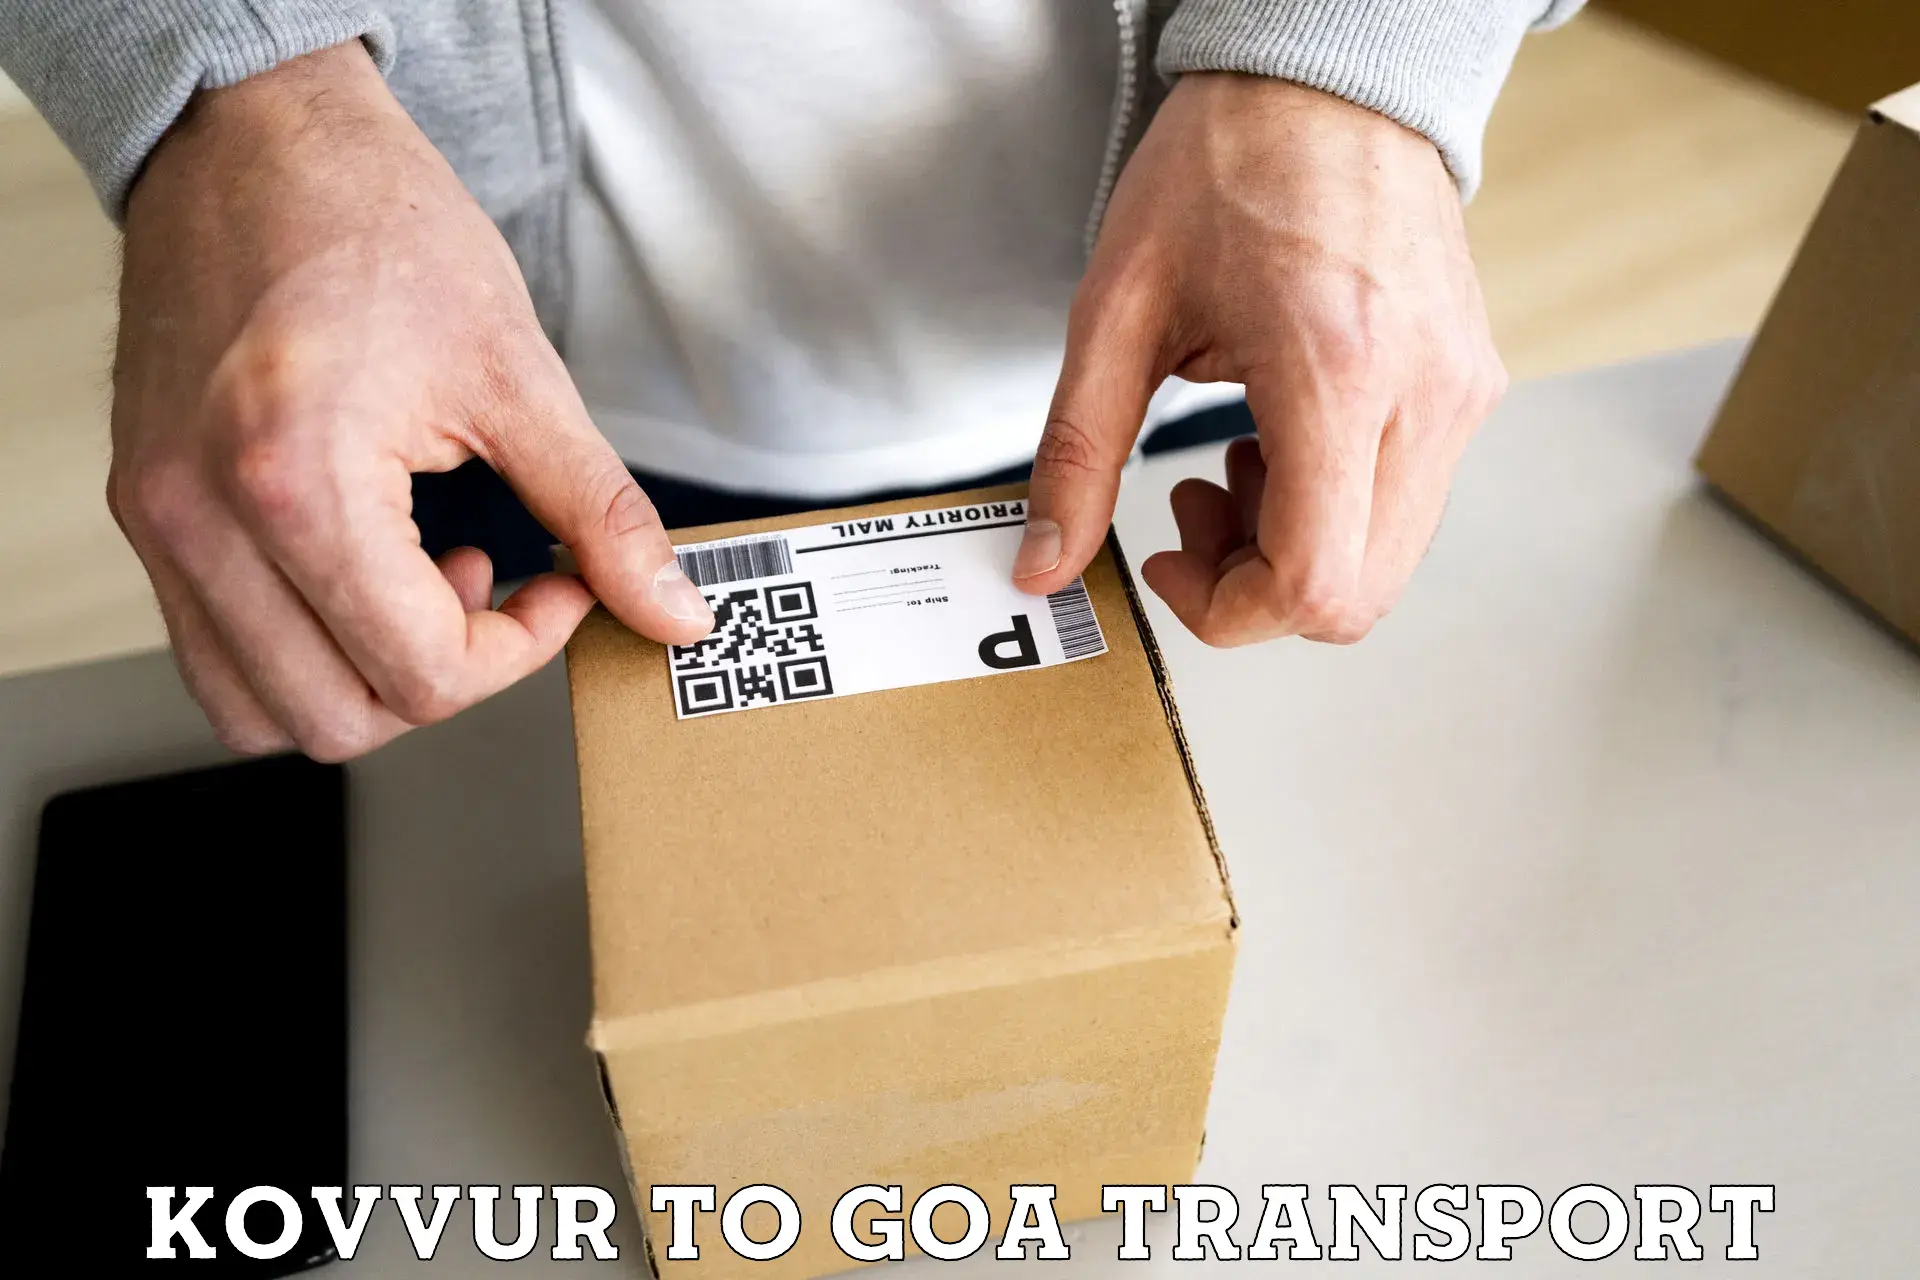 Shipping partner Kovvur to Goa University